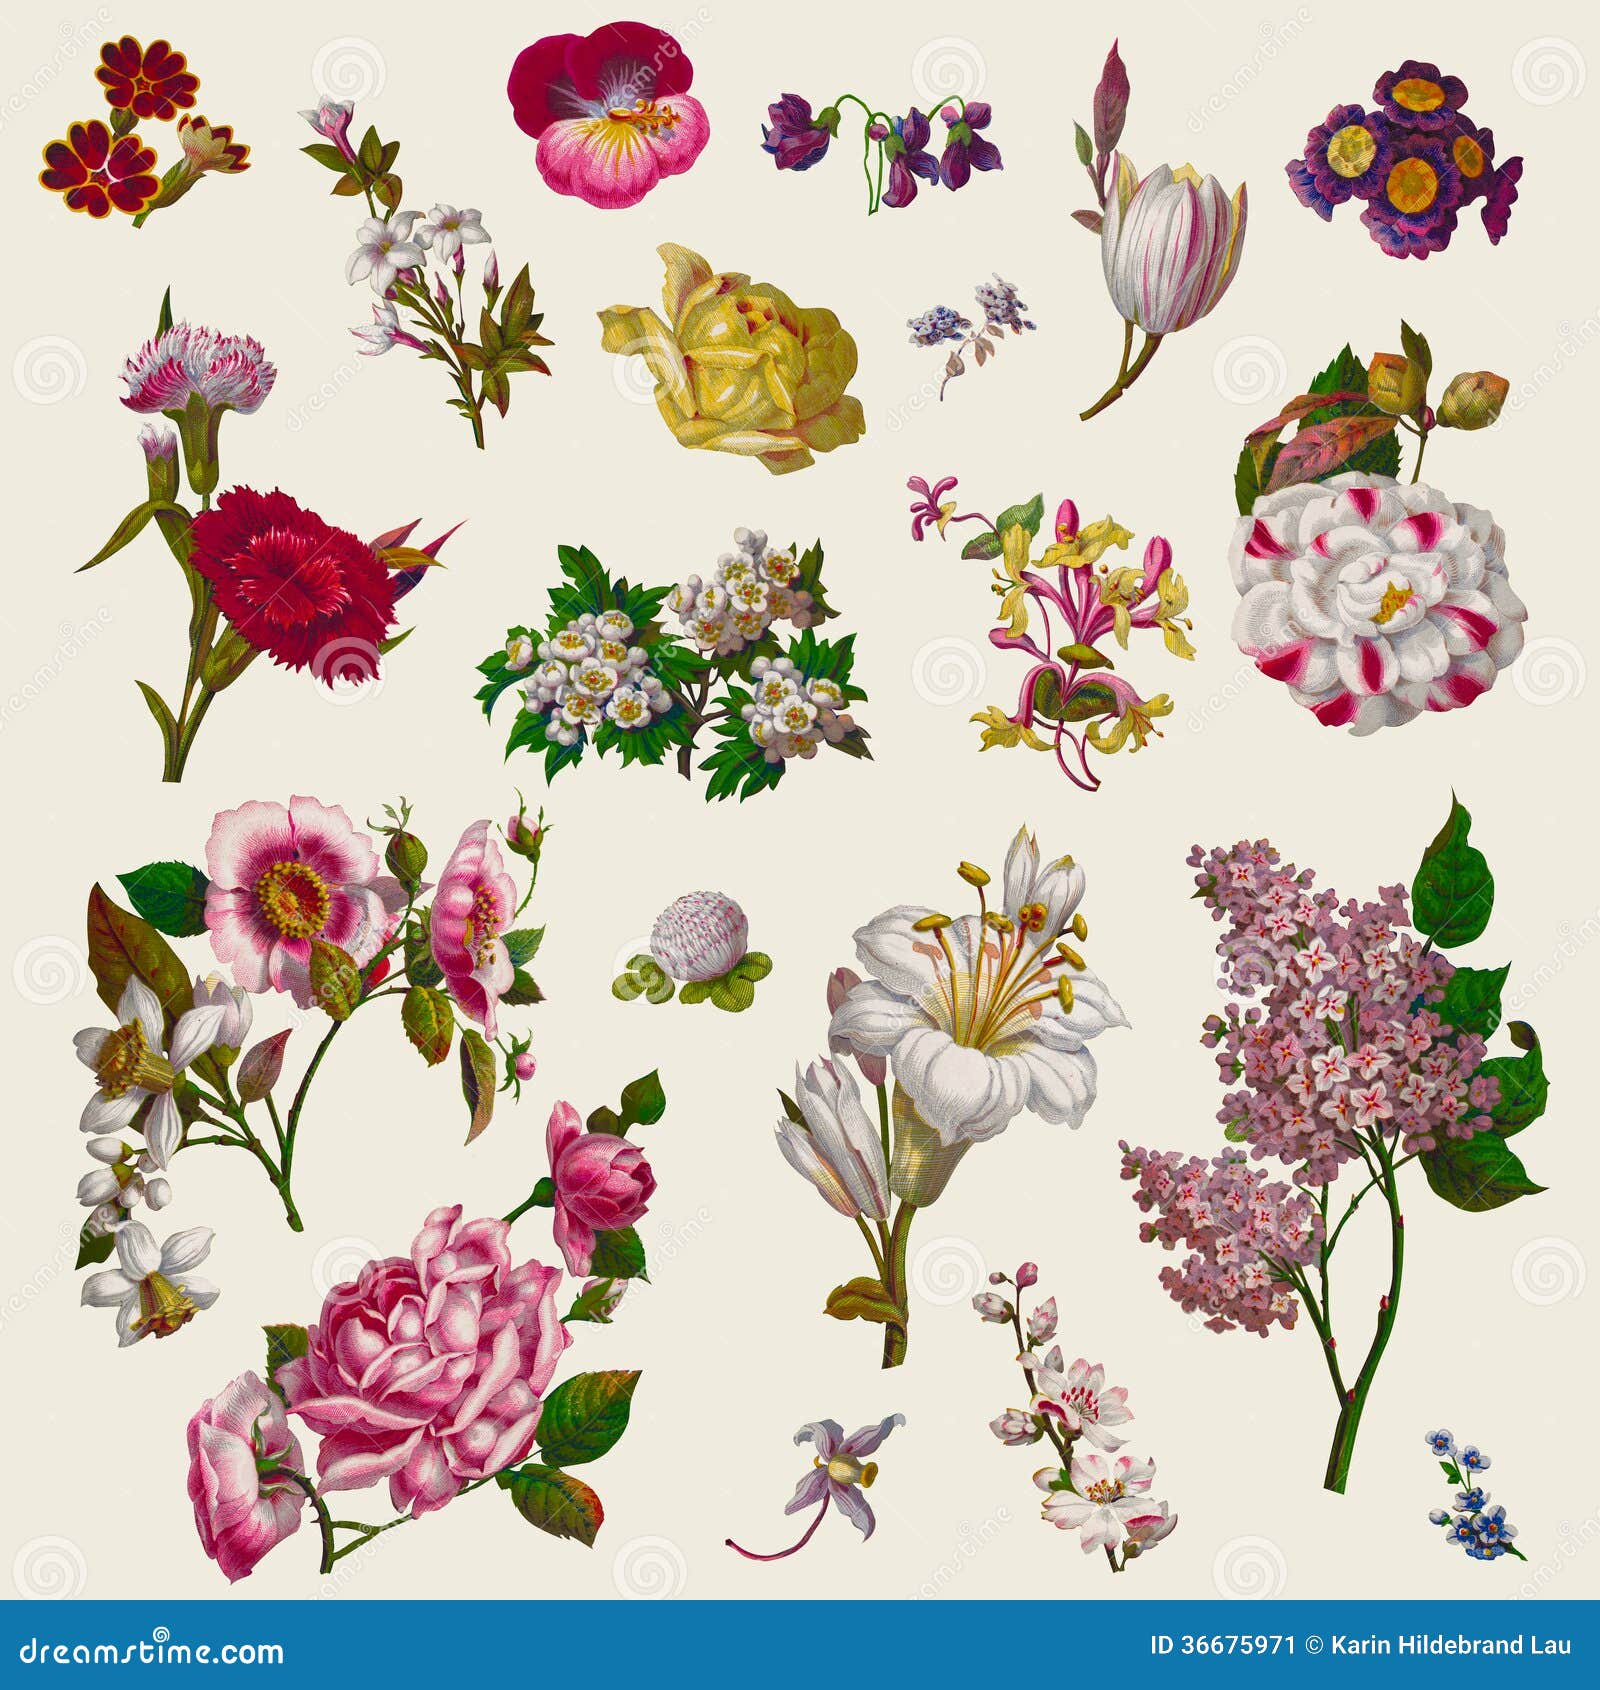 vintage victorian flowers clip art